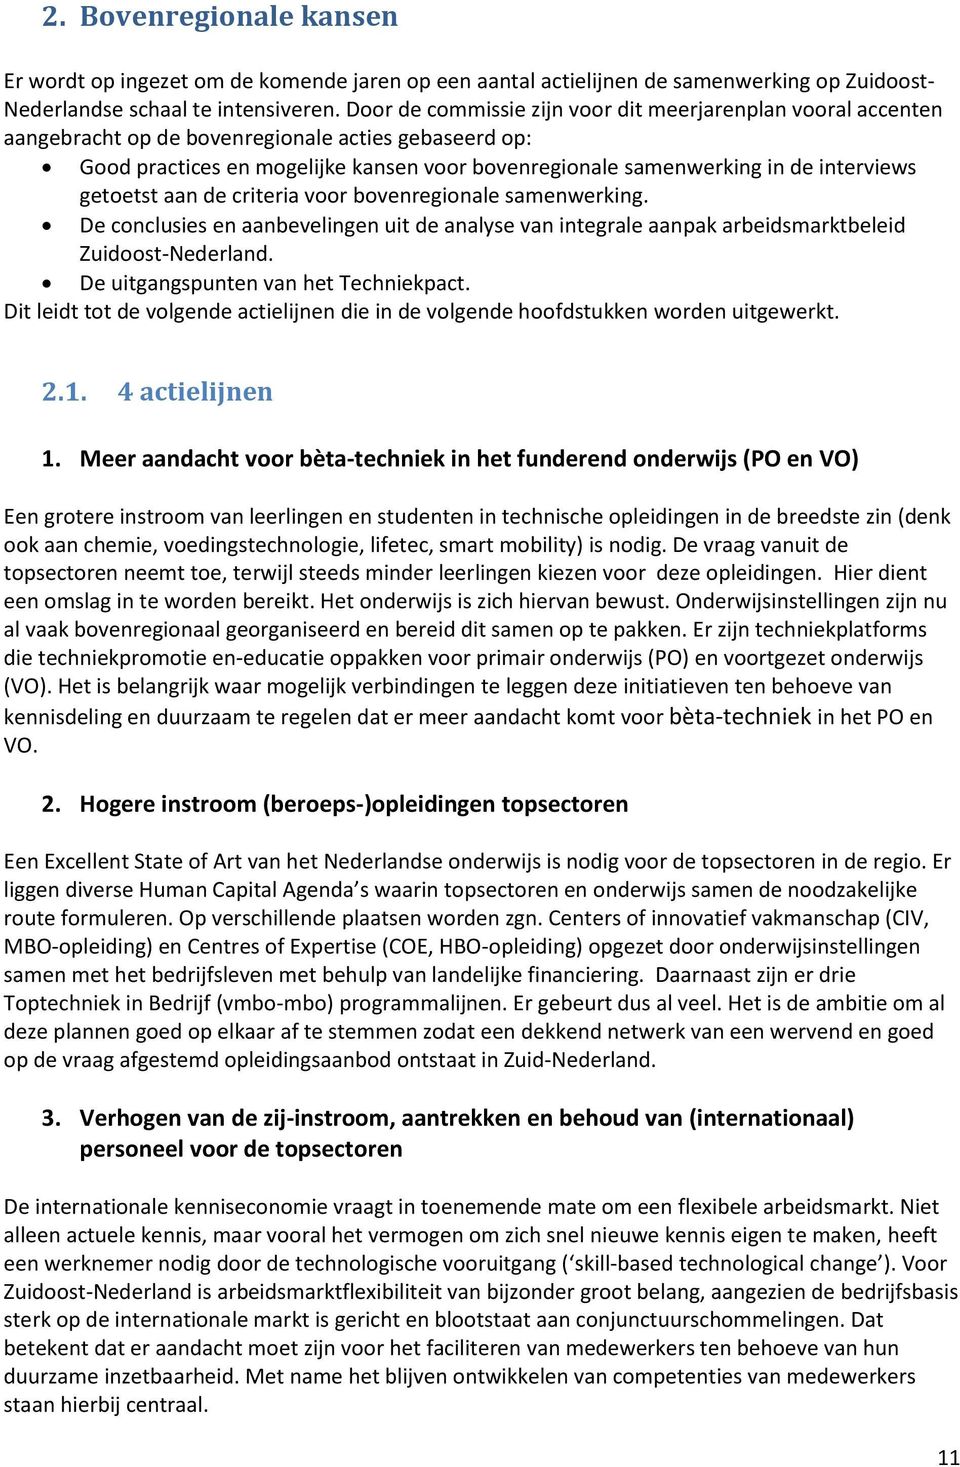 interviews getoetst aan de criteria voor bovenregionale samenwerking. De conclusies en aanbevelingen uit de analyse van integrale aanpak arbeidsmarktbeleid Zuidoost-Nederland.